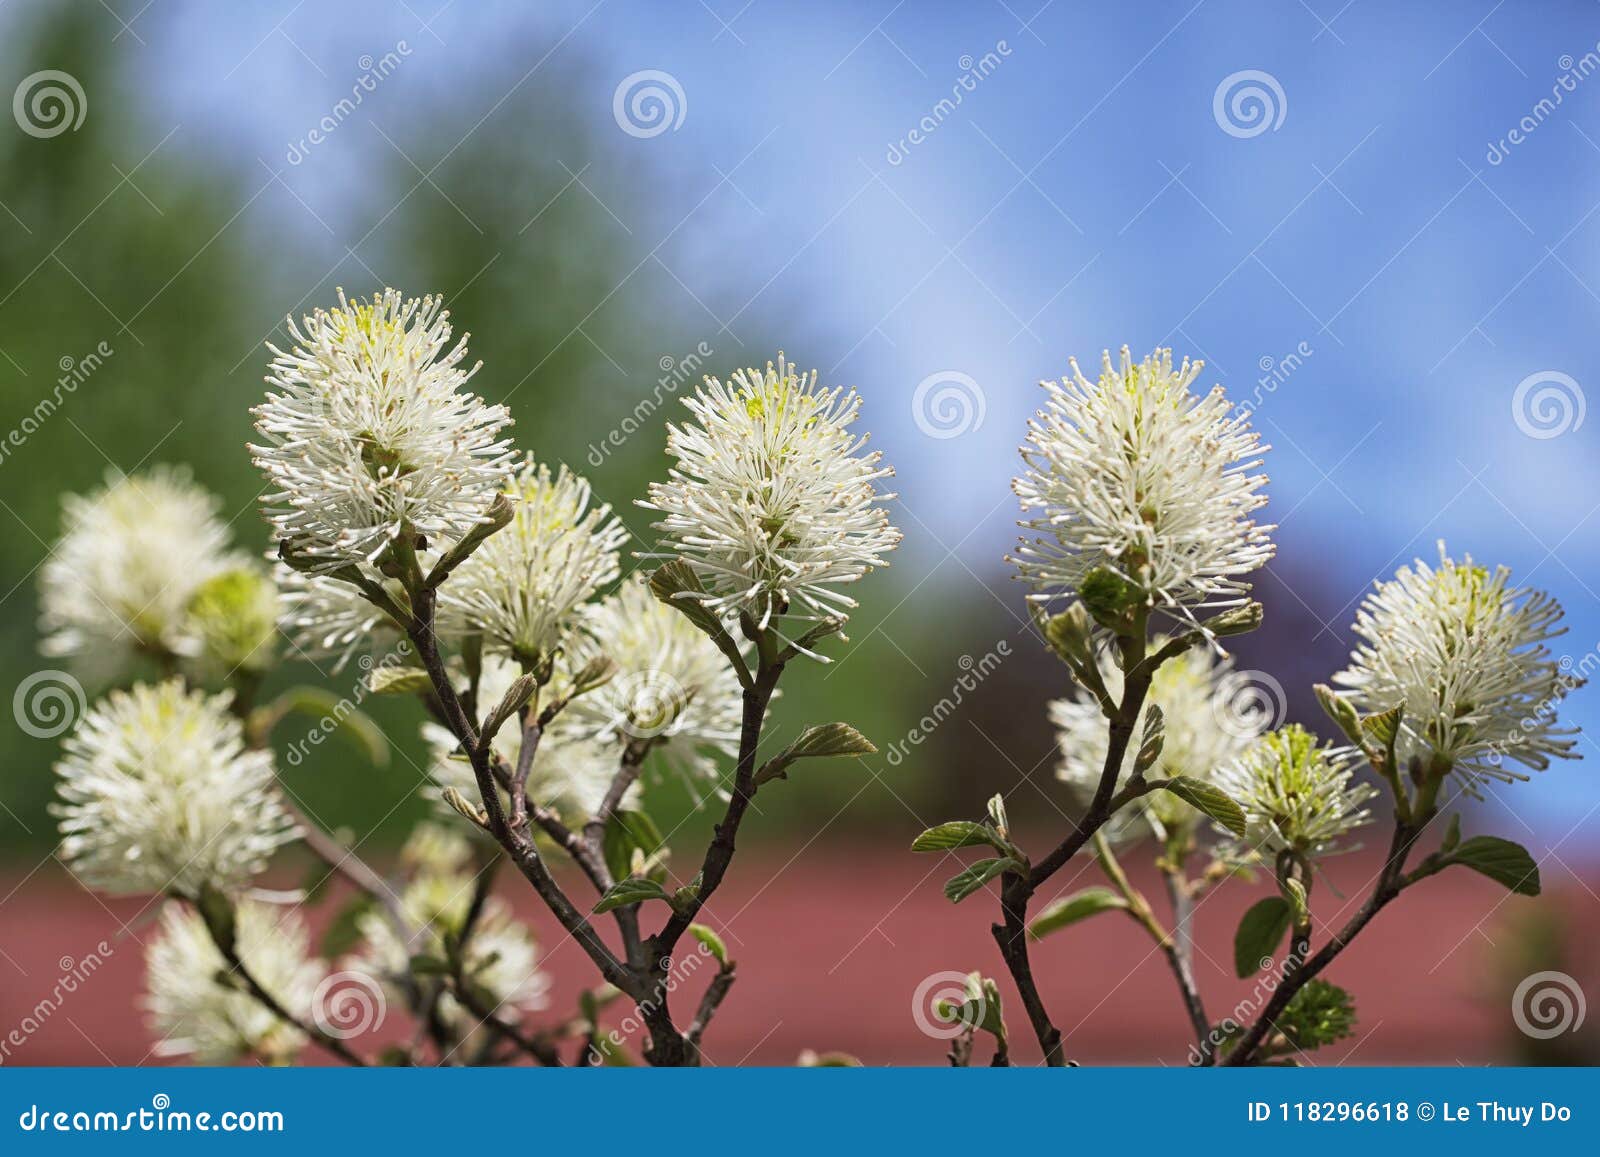 bottlebrush flower shrub